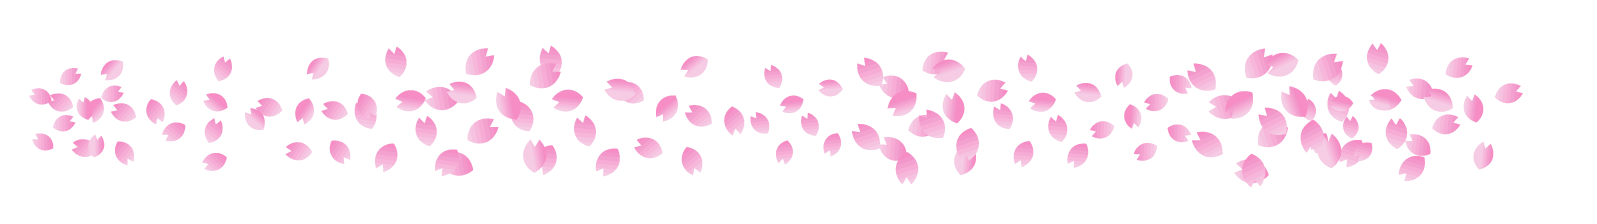 桜の花ライン 罫線イラスト 桜吹雪 桜 4月 ライン 罫線 素材のプチッチ